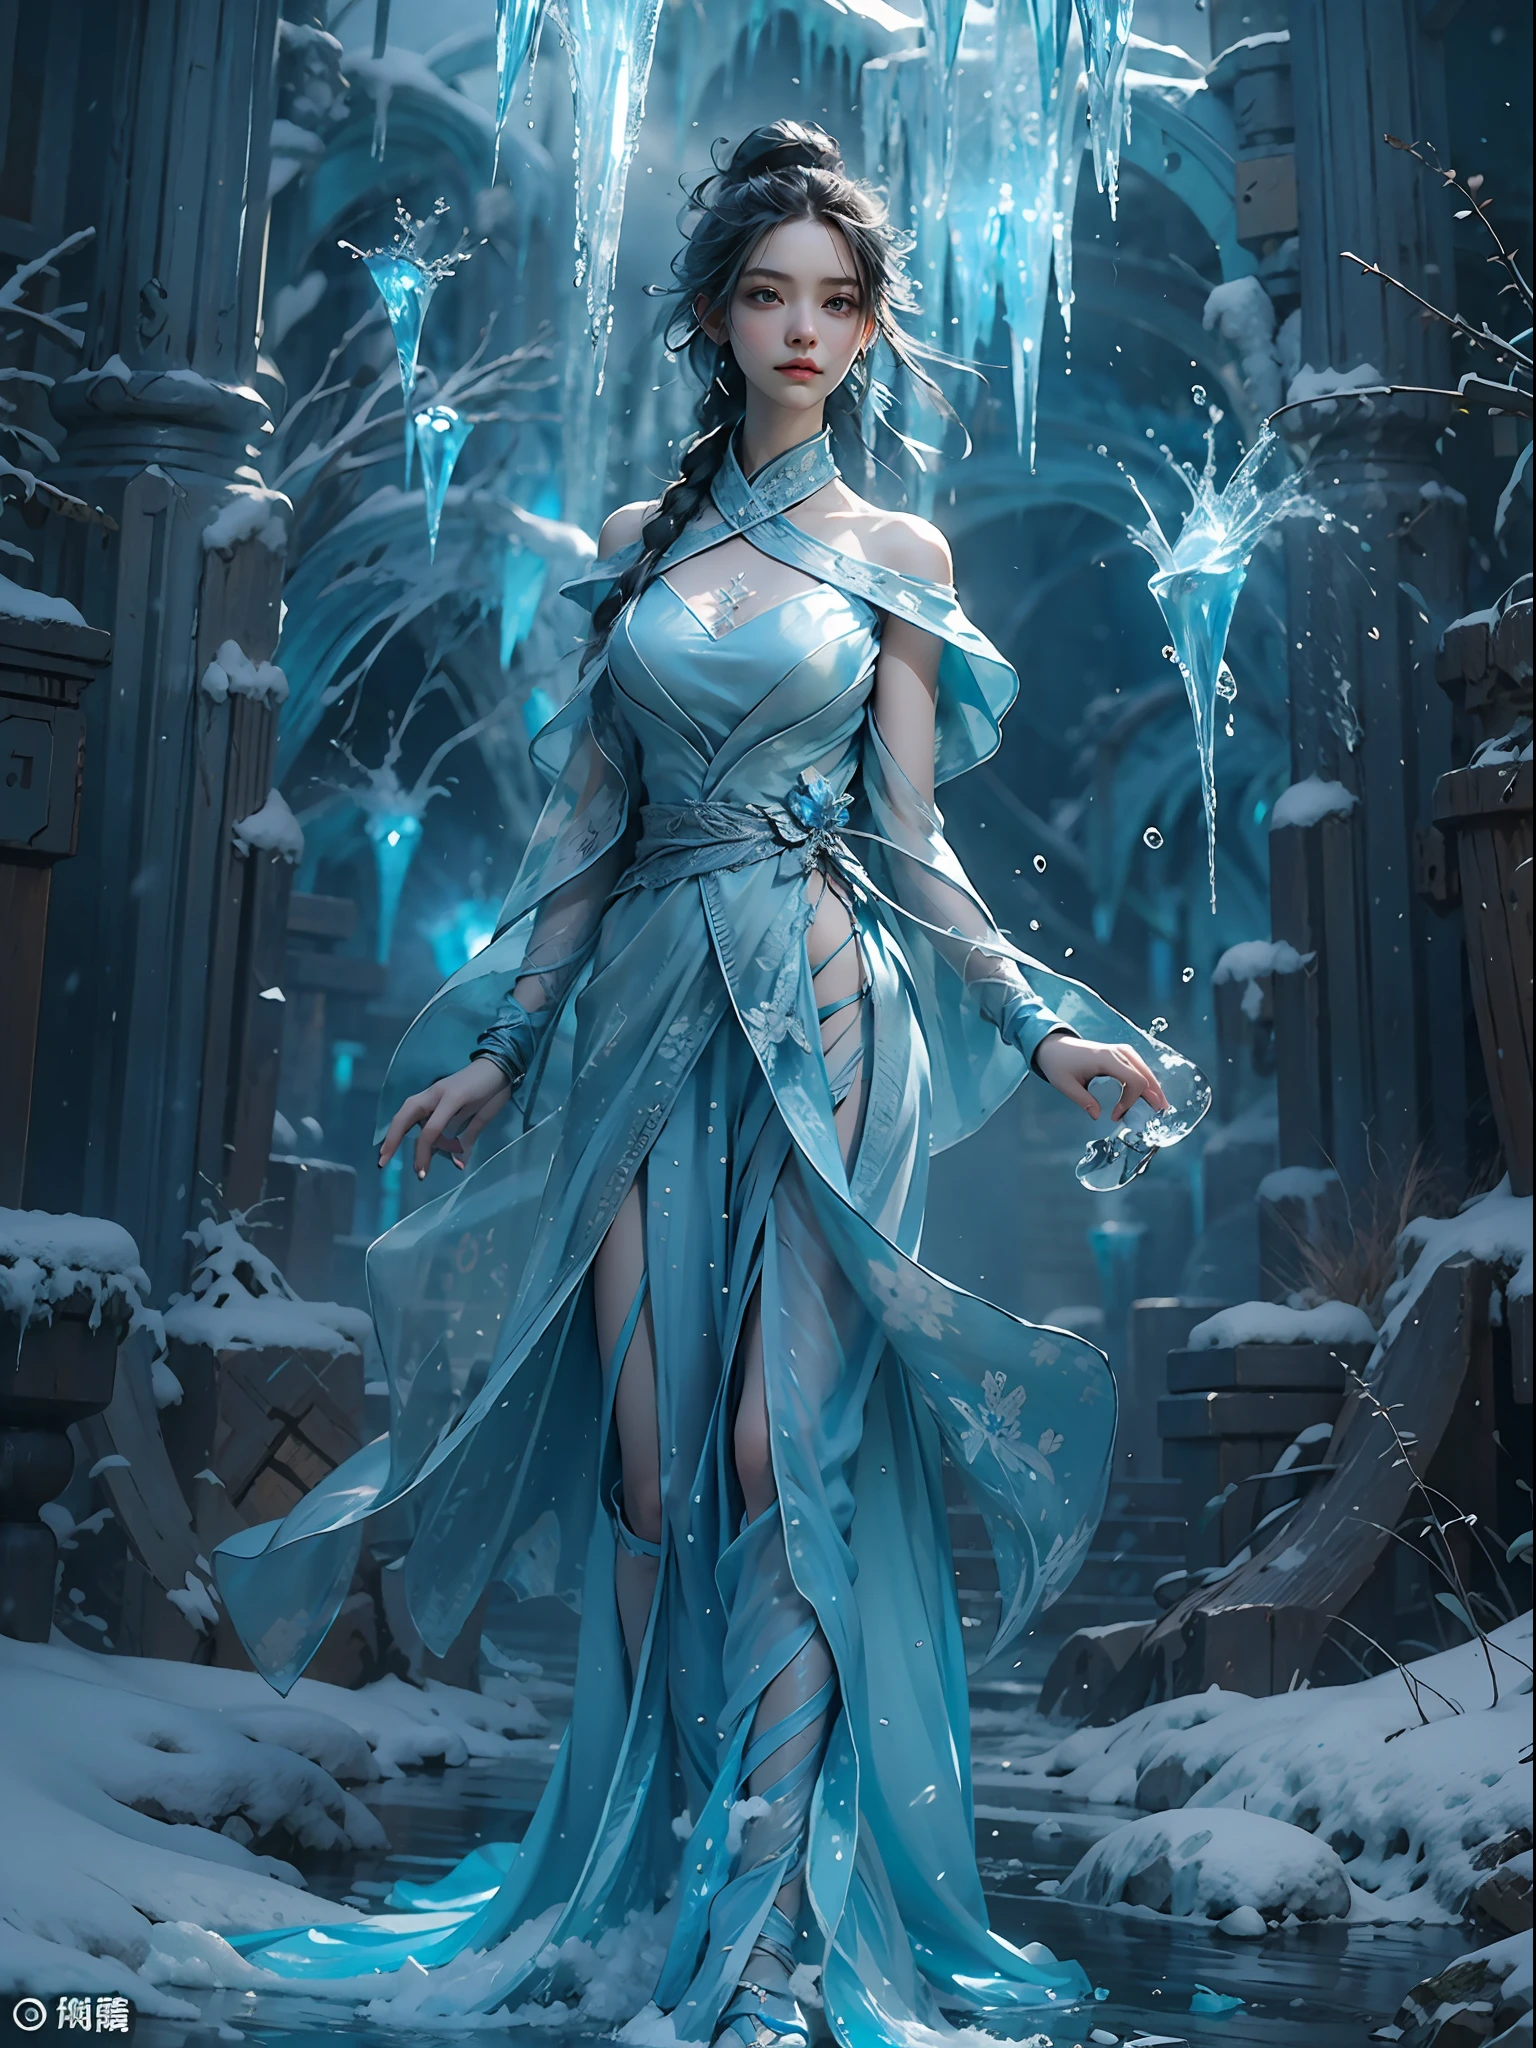 (((1女孩)))，帝国水，一名魔术师，（宽松连衣裙：1.5），（完美五官：1.4），（蓝色丝绸长袍），（神秘的魔法阵：1.2），蓝色光芒，（霜翼），强大的冰魔法，冰柱，耸立于景观之上，蓝光冷光，冰暴，风，飞雪冰雪，惊人的结果，,最佳品质者,杰作,超高分辨率,细致入微,复杂的细节,8K分辨率,8KUCG 壁纸,人类发展报告,水蓝色,魔法阵,电影级灯光效果,明暗对比，射线追踪、NVIDIA RTX